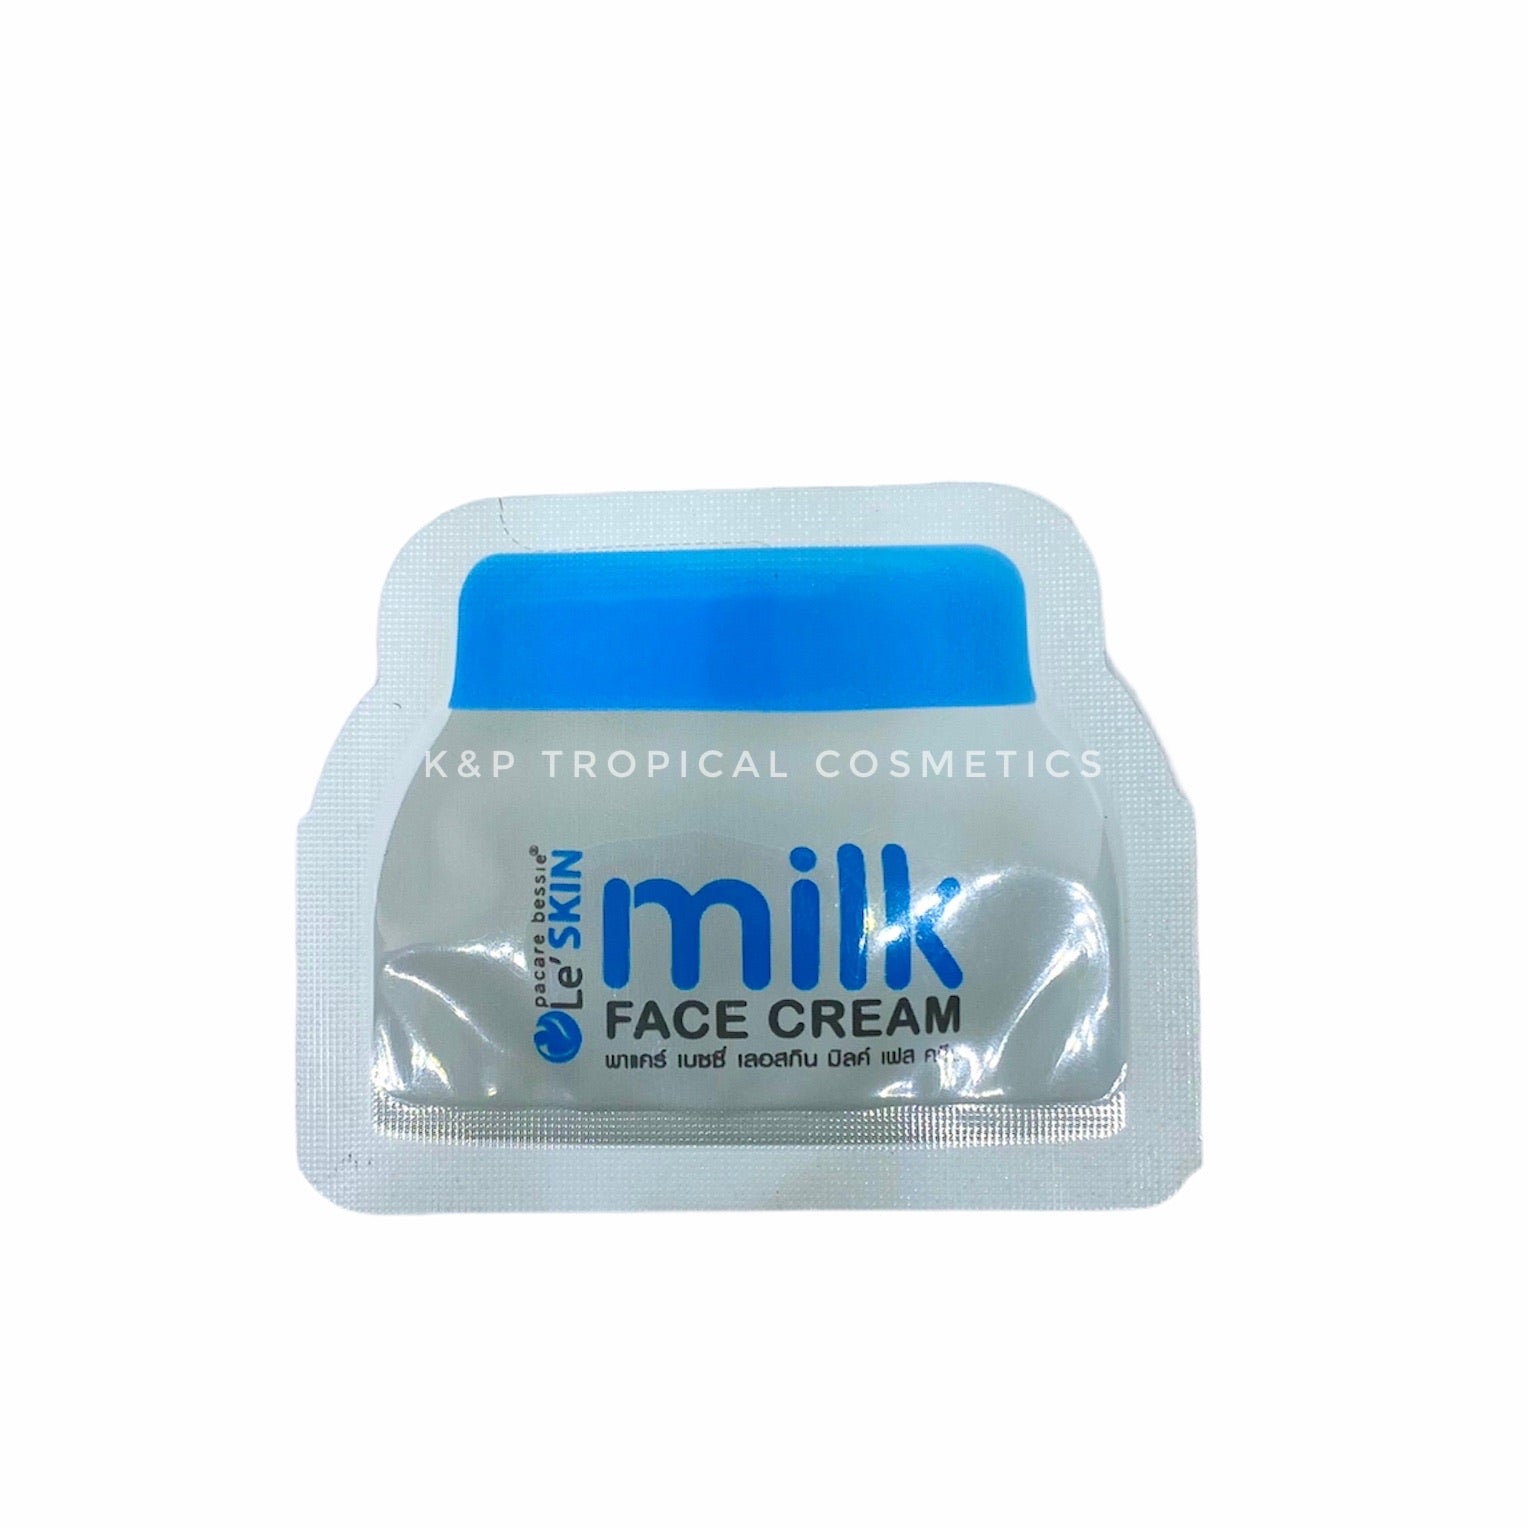 Le'SKIN Milk Face Cream (promo version) 2 ml., Молочный крем для лица (промо версия) 2 мл.